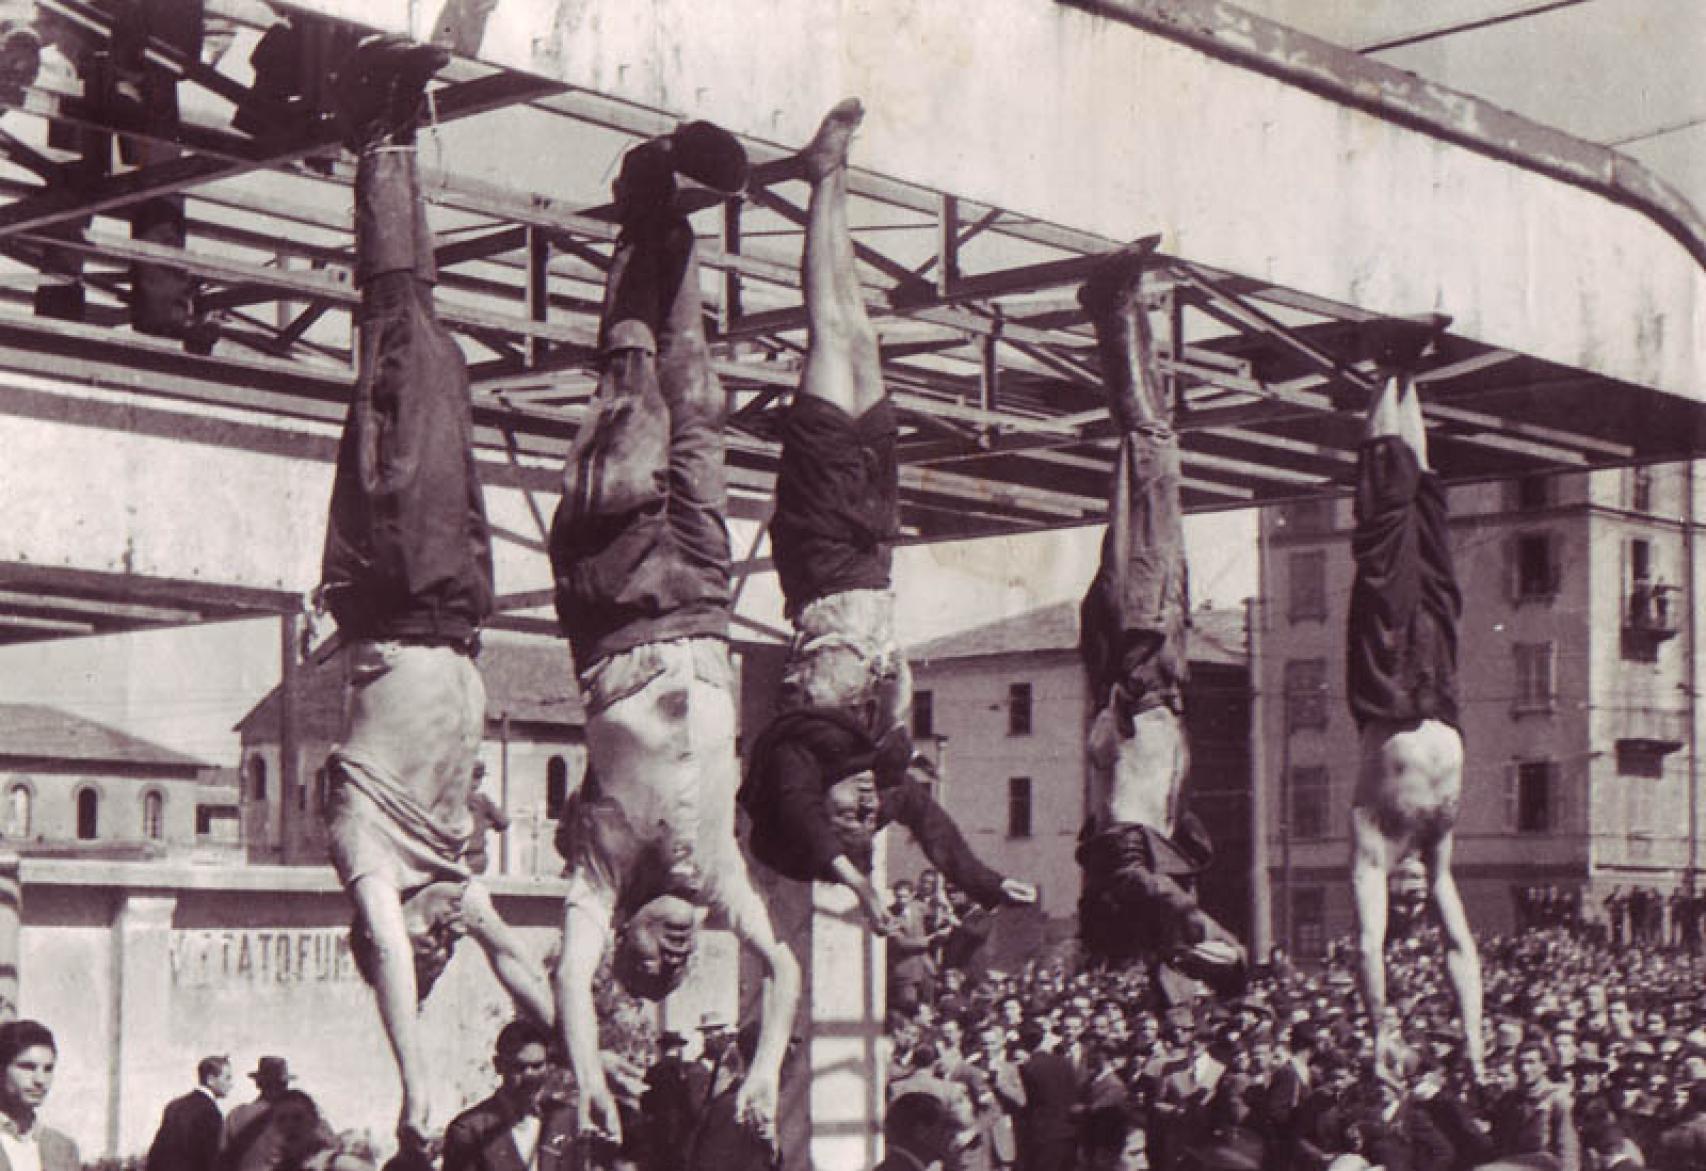 De Izquierda a derecha: Nicola Bombacci, Benito Mussolini, Clara Petacci, Alessandro Pavolini y  Achille Starace, siendo exhibidos en la Plaza de Loreto en la ciudad de Milán el año 1945.